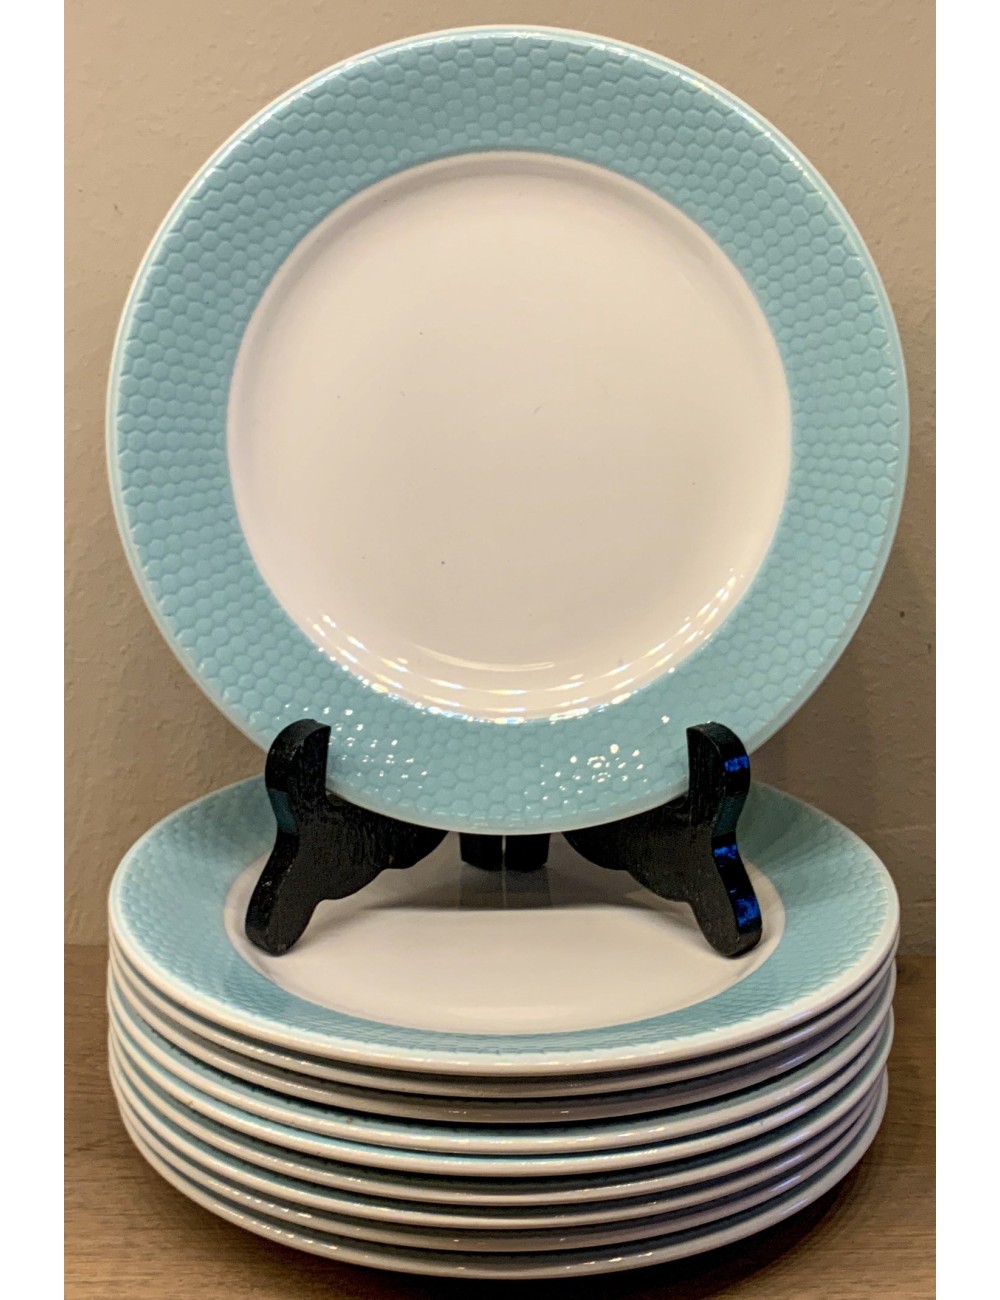 Bord / Ontbijtbord - ongemerkt (waarschijnlijk Frans) - azuurblauw met een soort bijenkorfreliëf